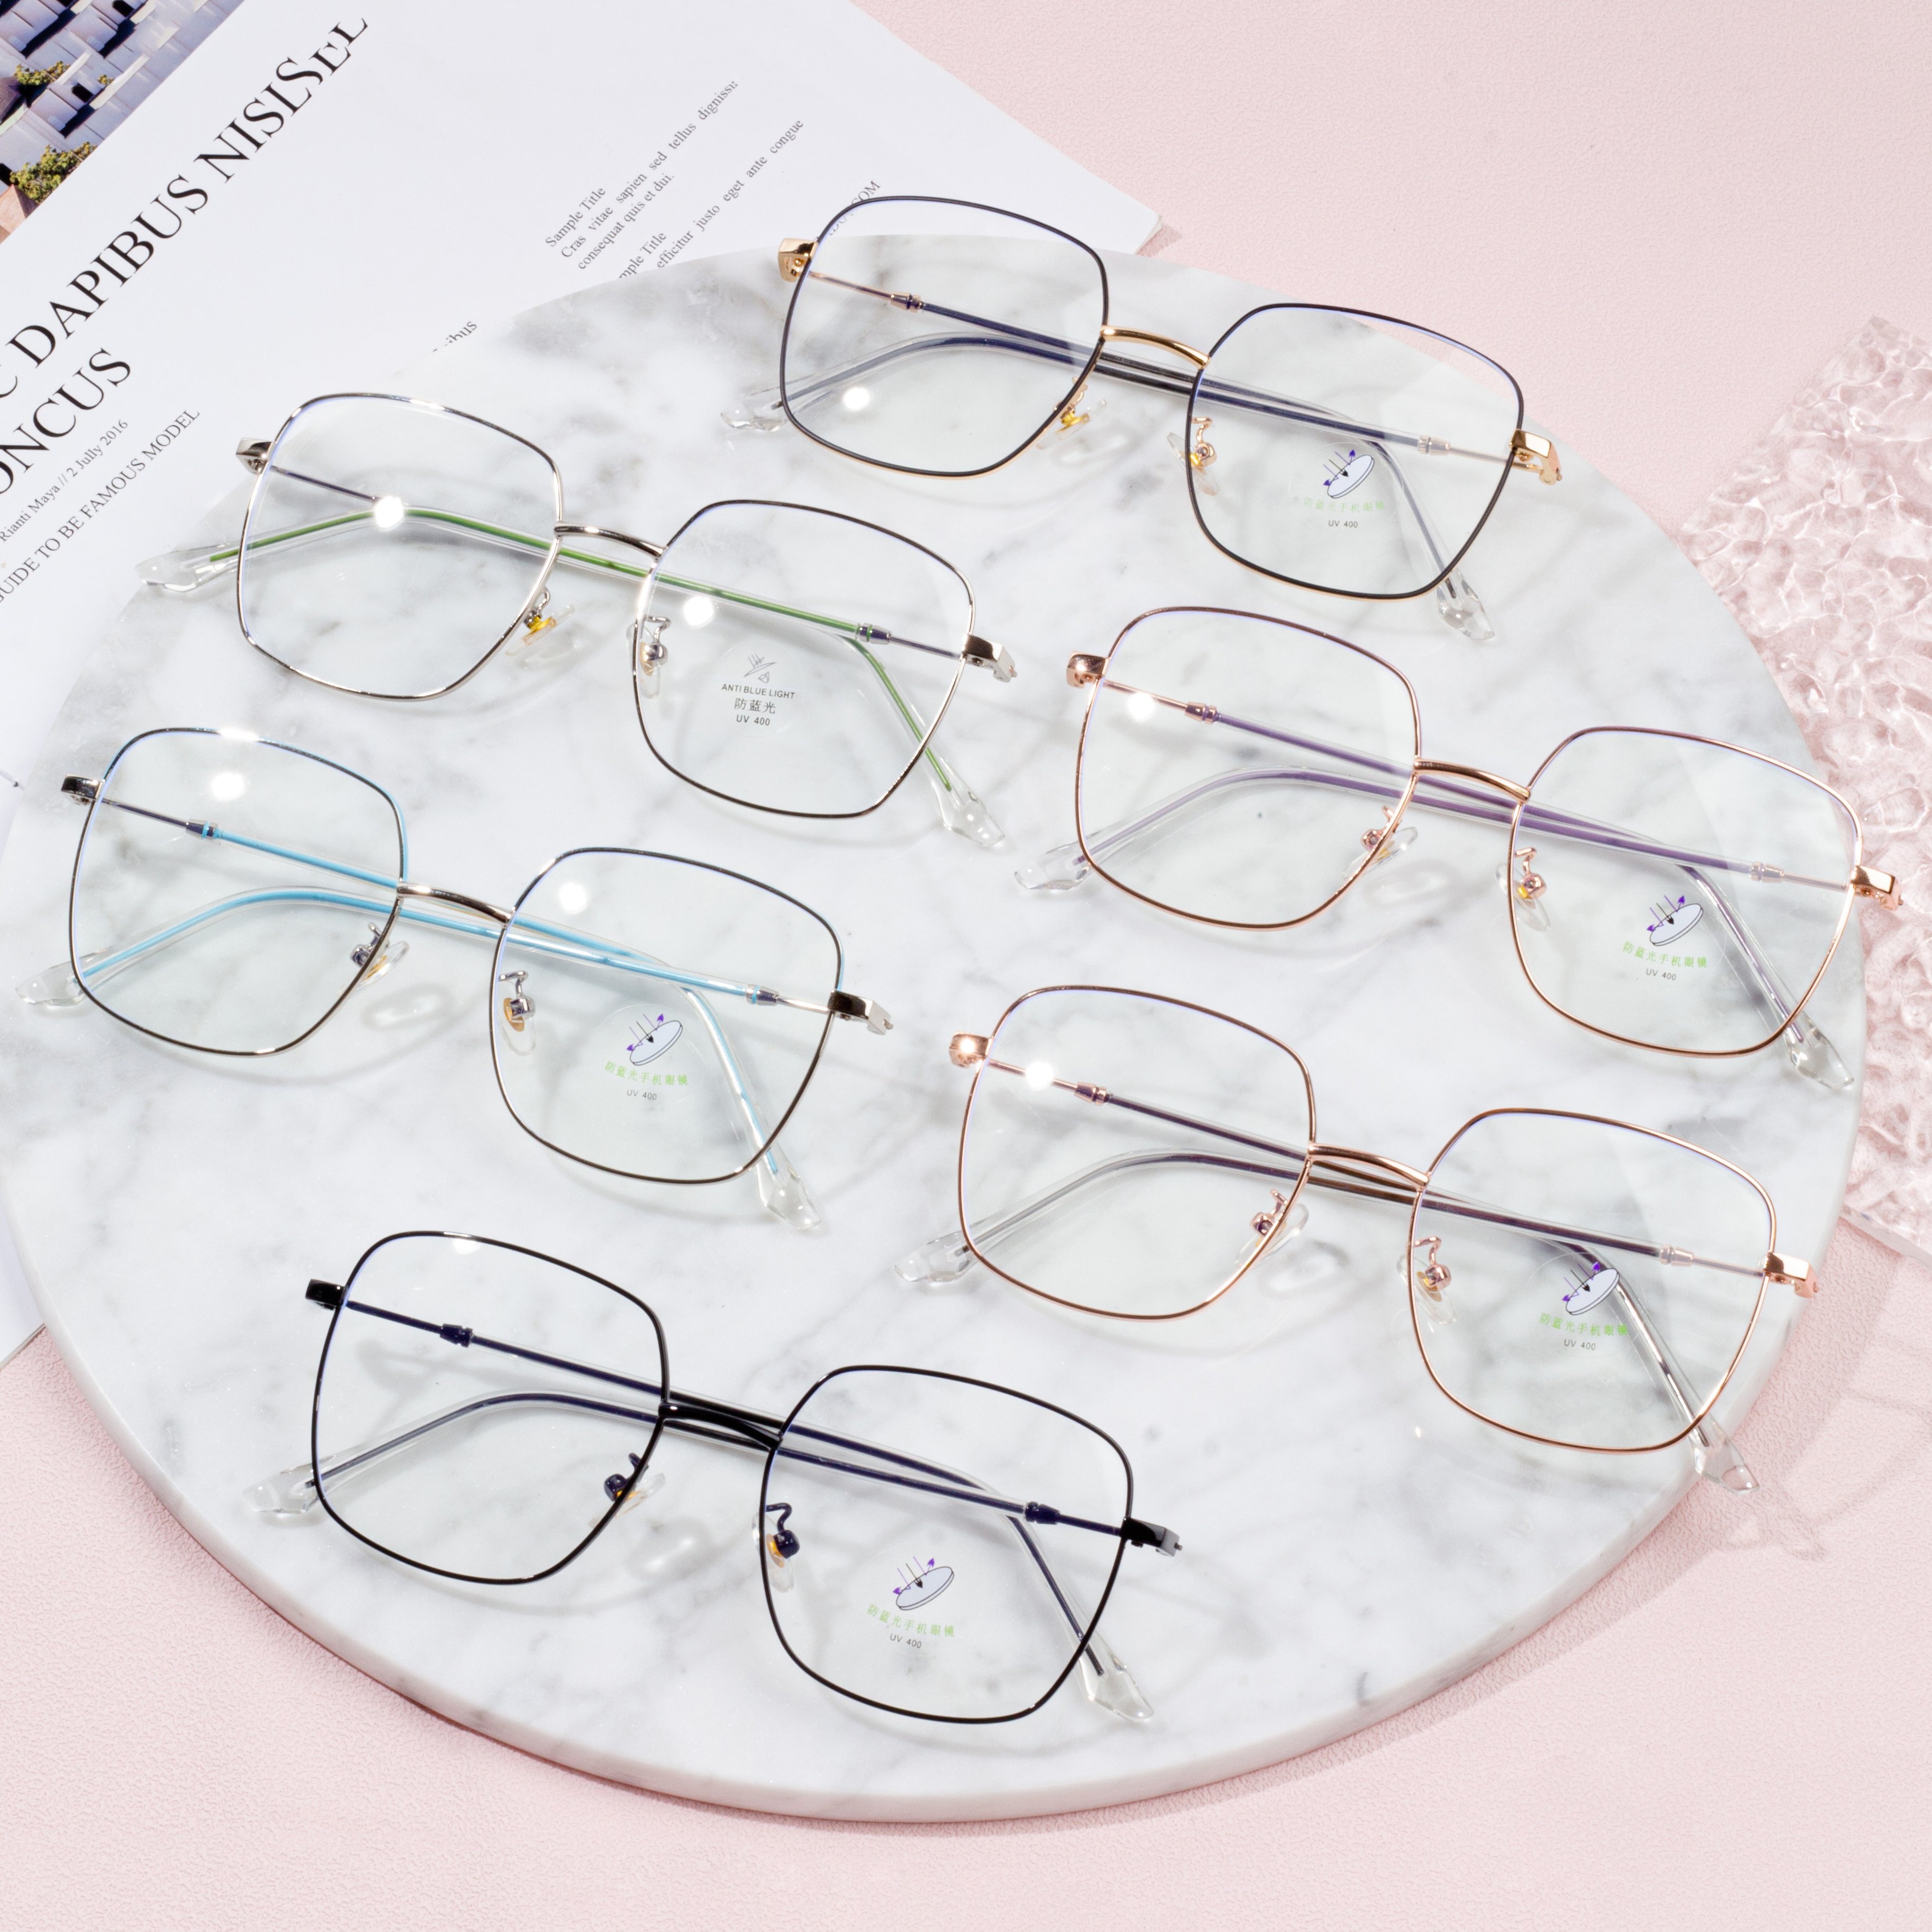 Wholesale Nije Classic Eyeglass Frames foar froulju